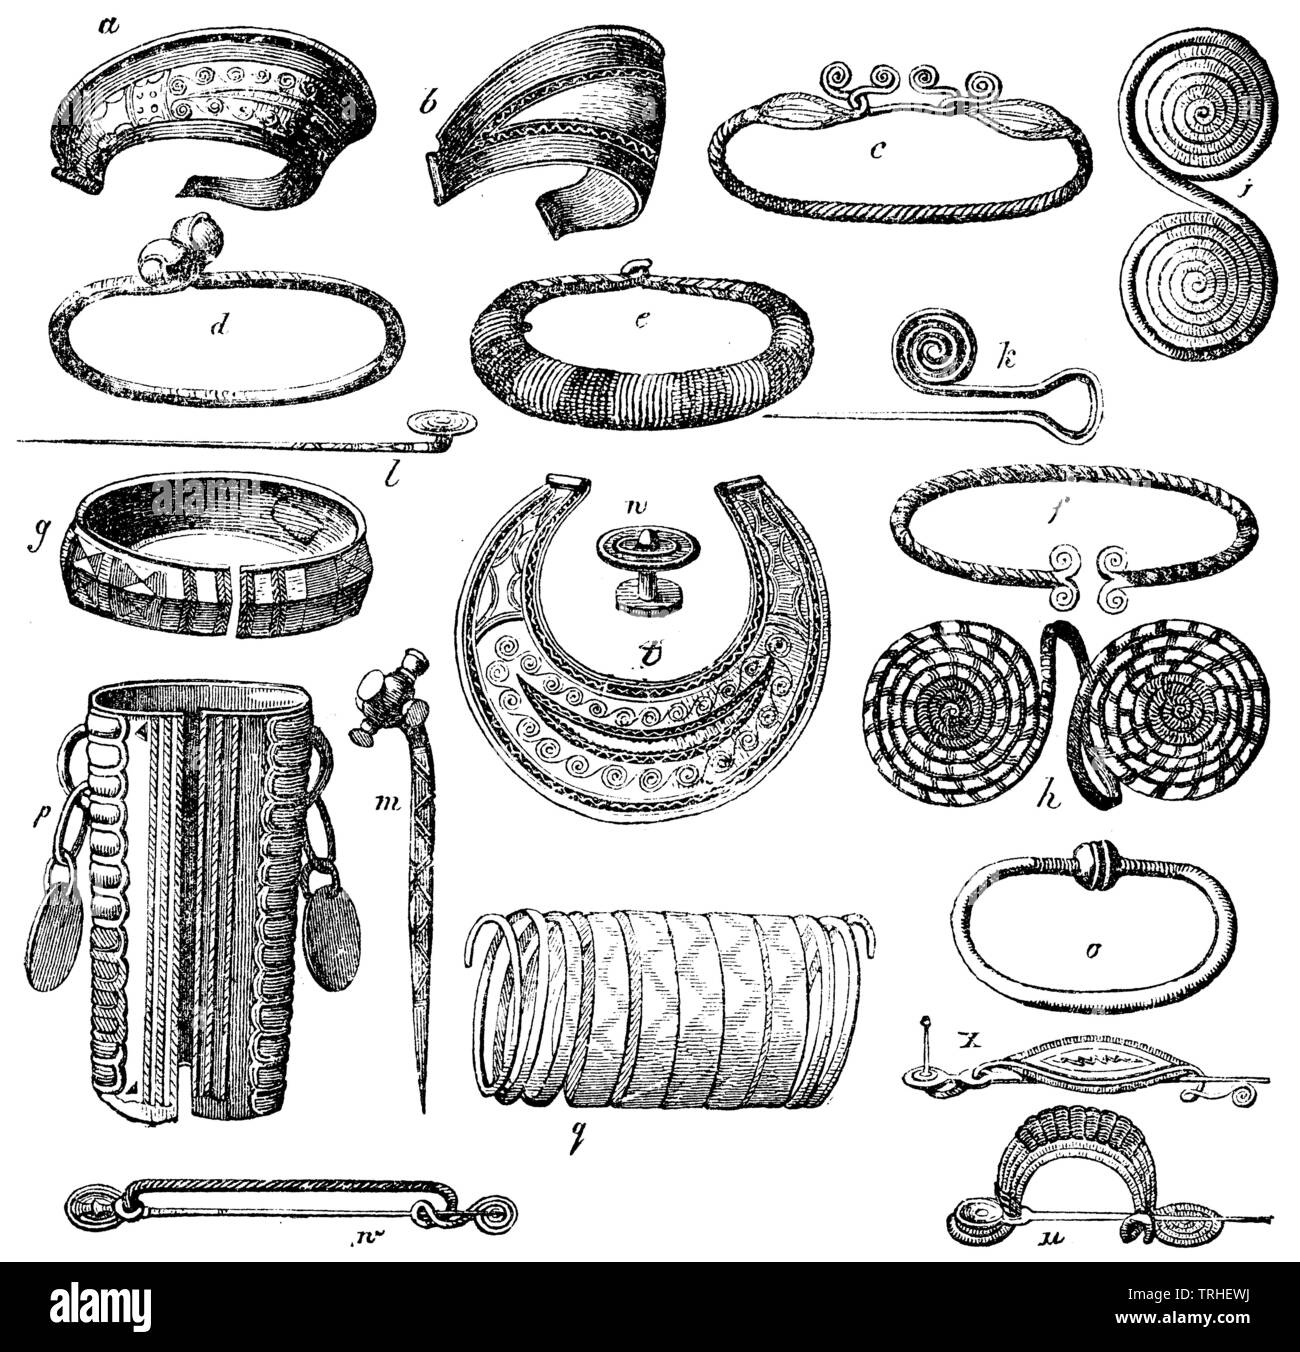 Antichi gioielli in bronzo. a, b) diademi. c, d e)anelli di testa, collo anelli. f, g) Polso ganci. h, i) braccio gioielli, doppi dischi. k, l, m) aghi. n) doppio pulsante. o) bracciale da polso. p, q) braccio gioielli. u, w, x), fibule , (antropologia Prenota, 1874) Foto Stock